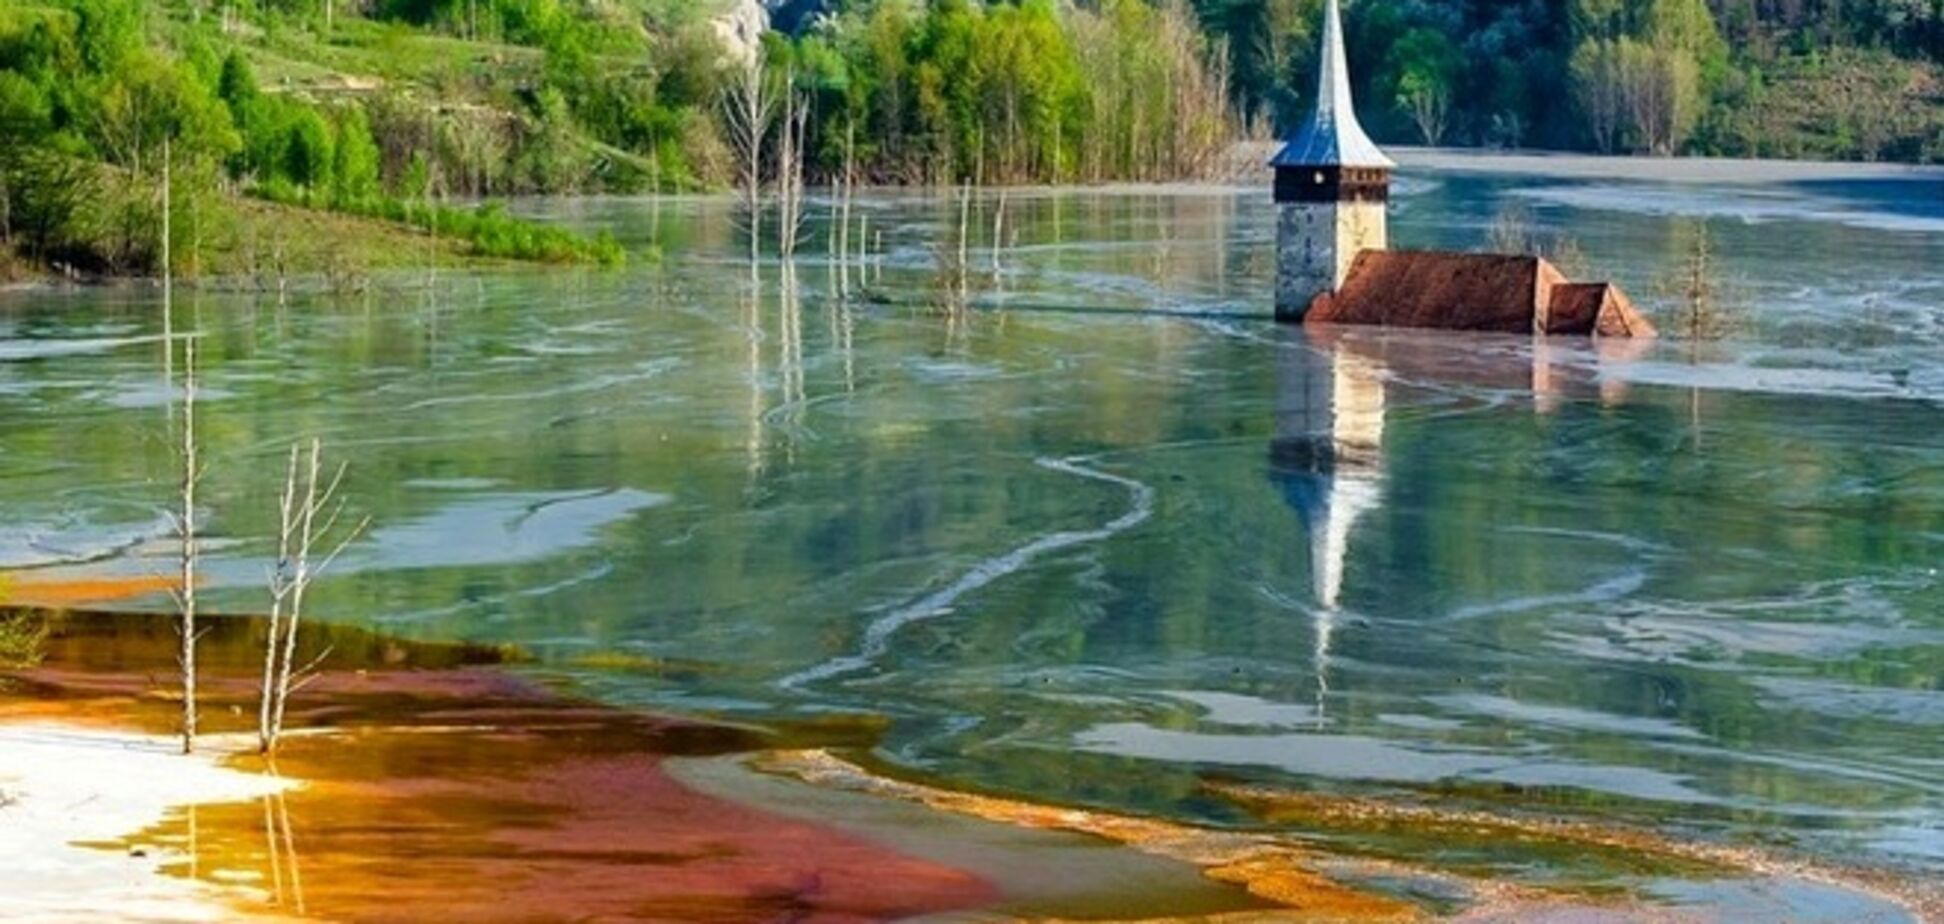 На месте румынской деревни образовалось токсичное озеро